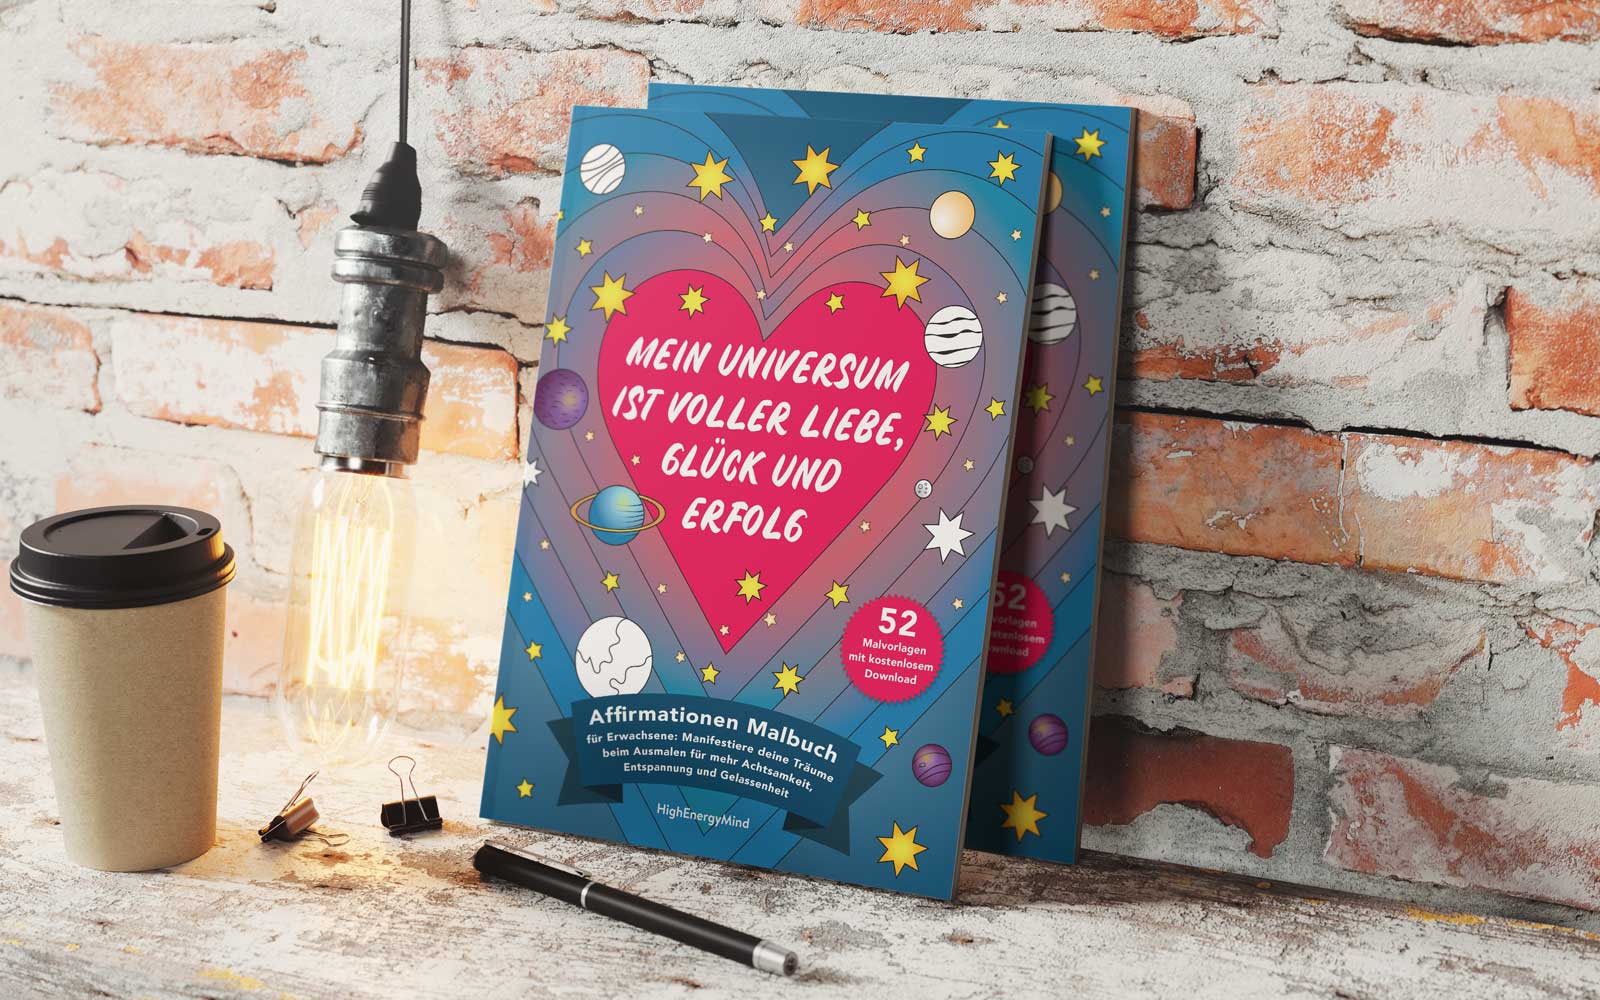 Mein Universum ist voller Liebe, Glück und Erfolg - Affirmationen Malbuch für Erwachsene